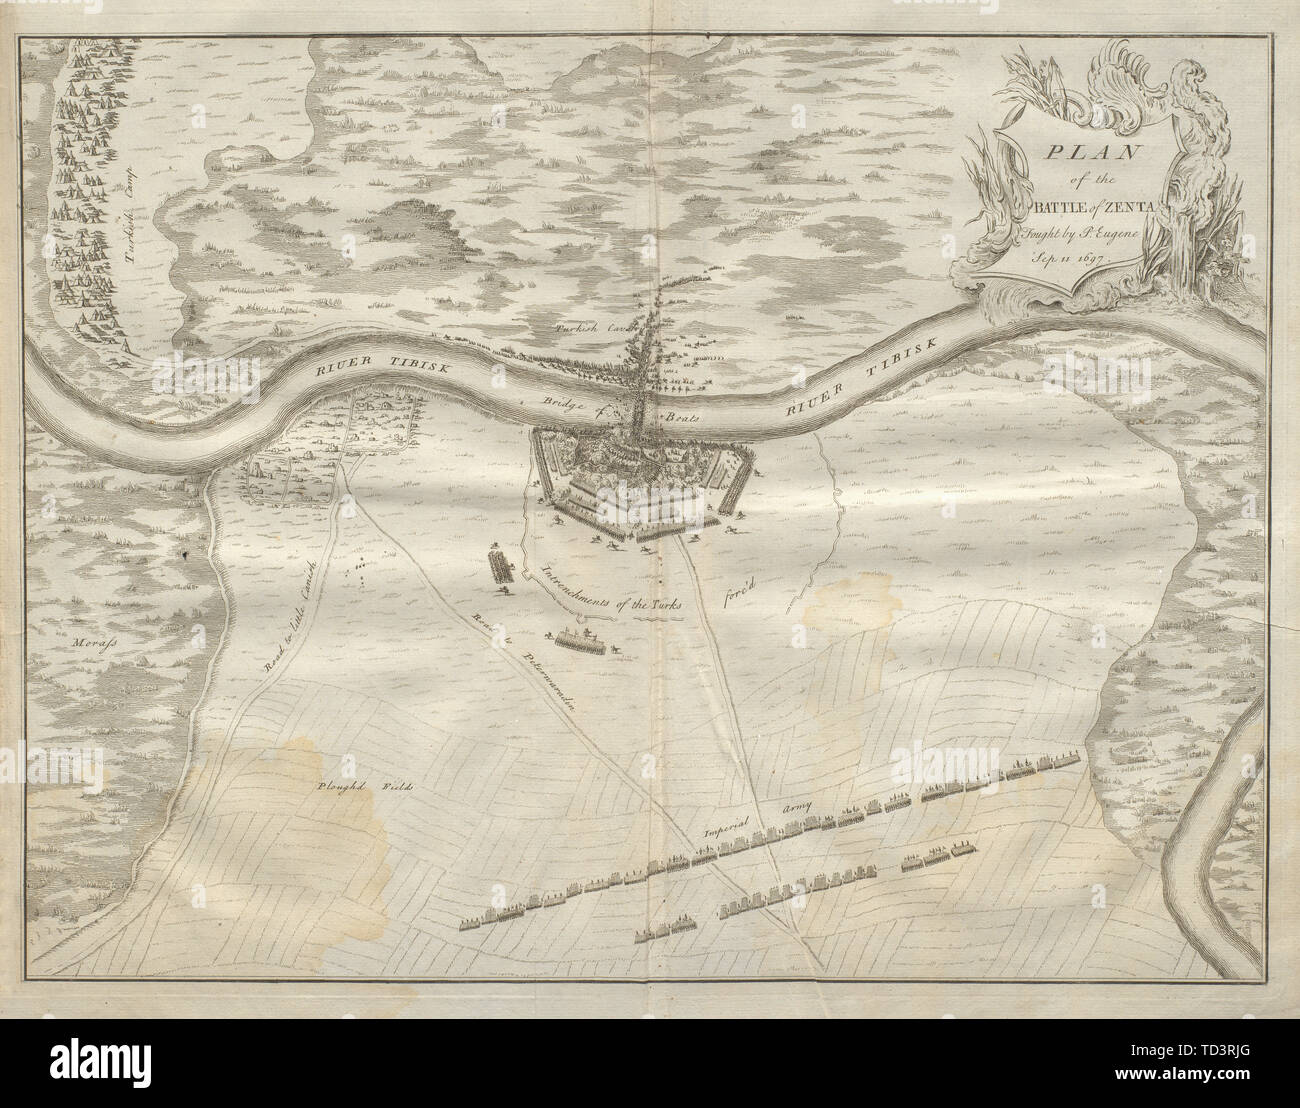 Piano di battaglia di Zenta… Sep 11 1697. La Serbia. DU BOSC 1736 antica mappa Foto Stock